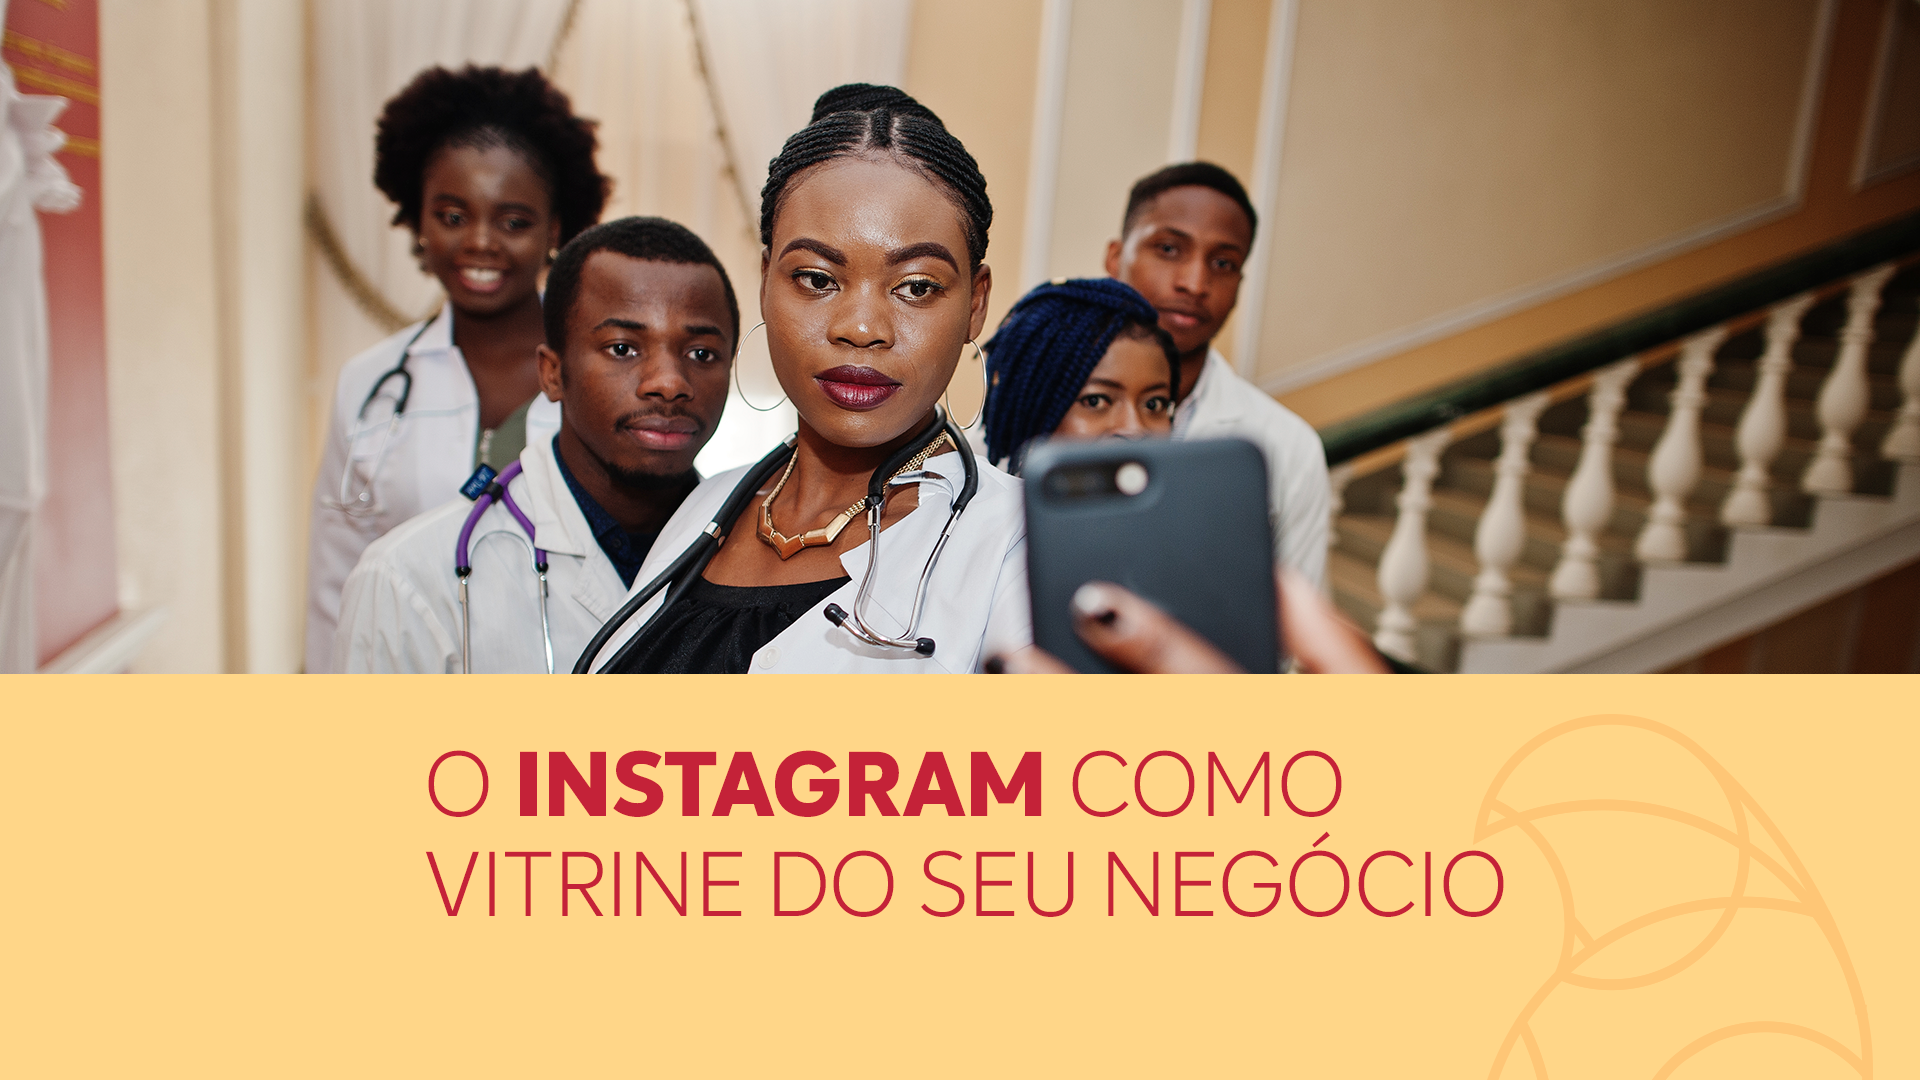 O instagram como vitrine do seu negócio no marketing medico